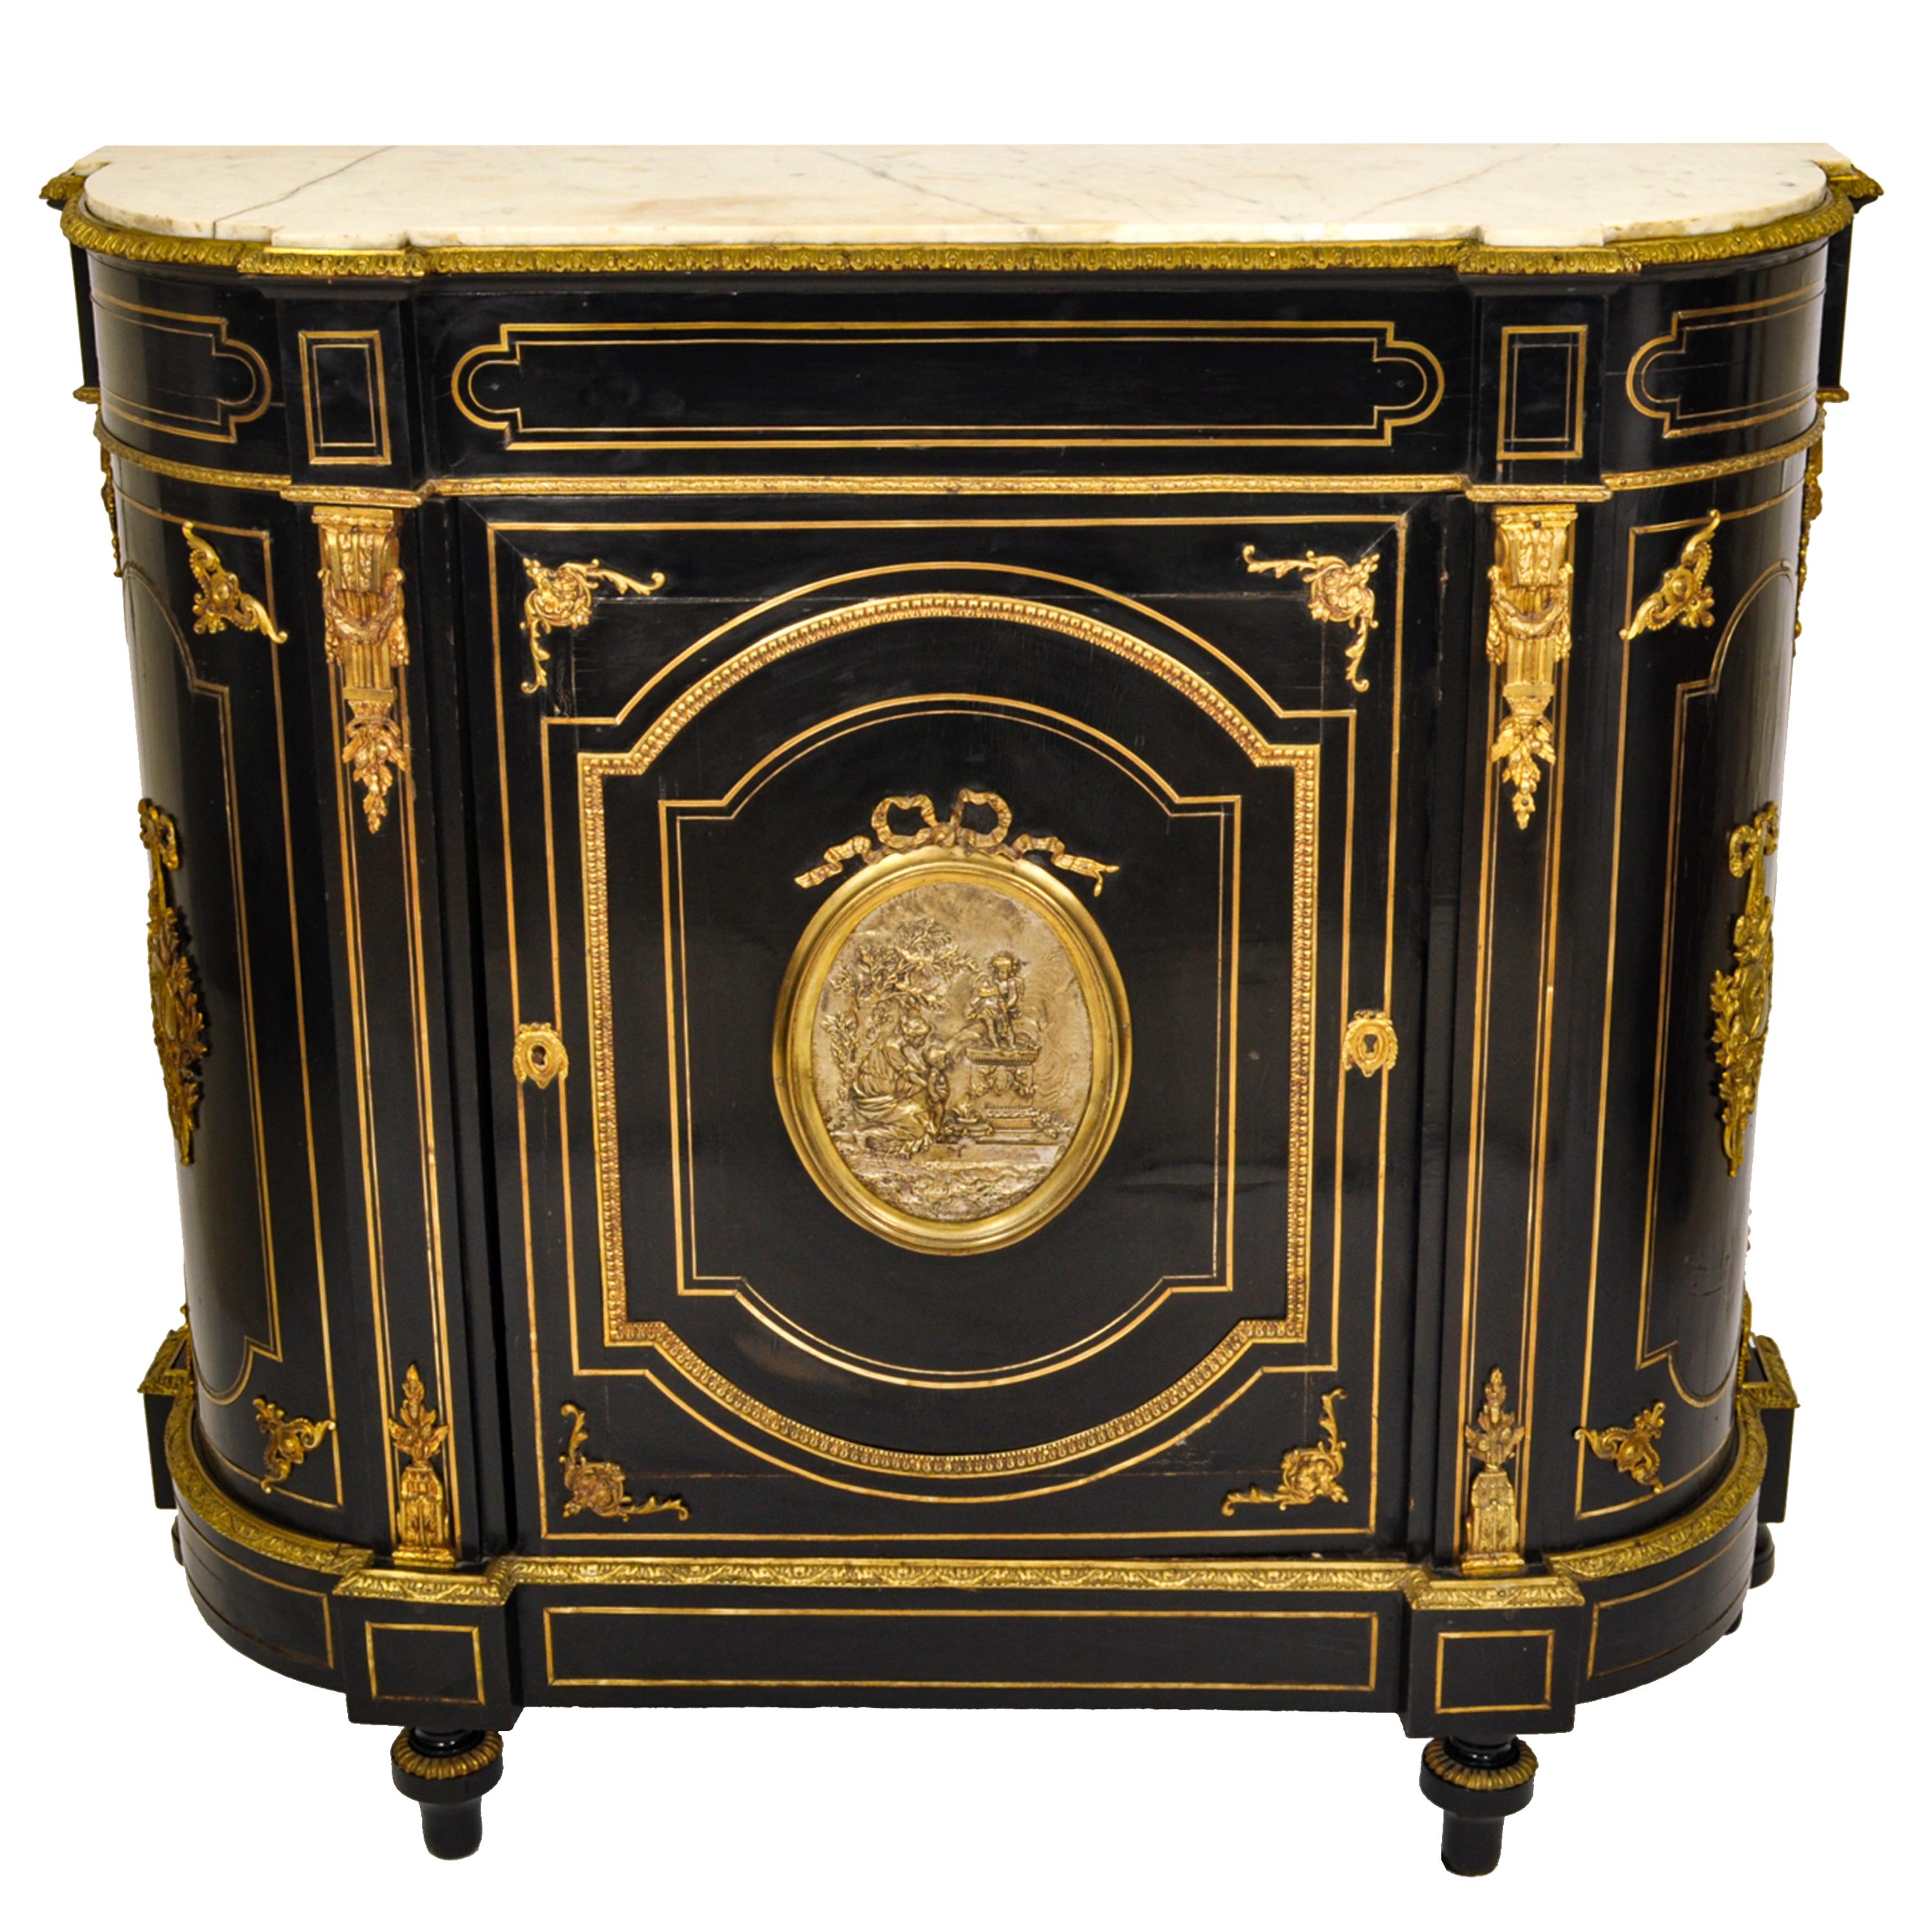 Ein feiner und eleganter antiker französischer Schrank aus vergoldeter Bronze und ebonisiertes Napoleon III, um 1860.
Der Schrank hat eine weiße Cararra-Marmorplatte, die in ein ebonisiertes Gehäuse eingelassen ist. Der Schrank ist prächtig mit